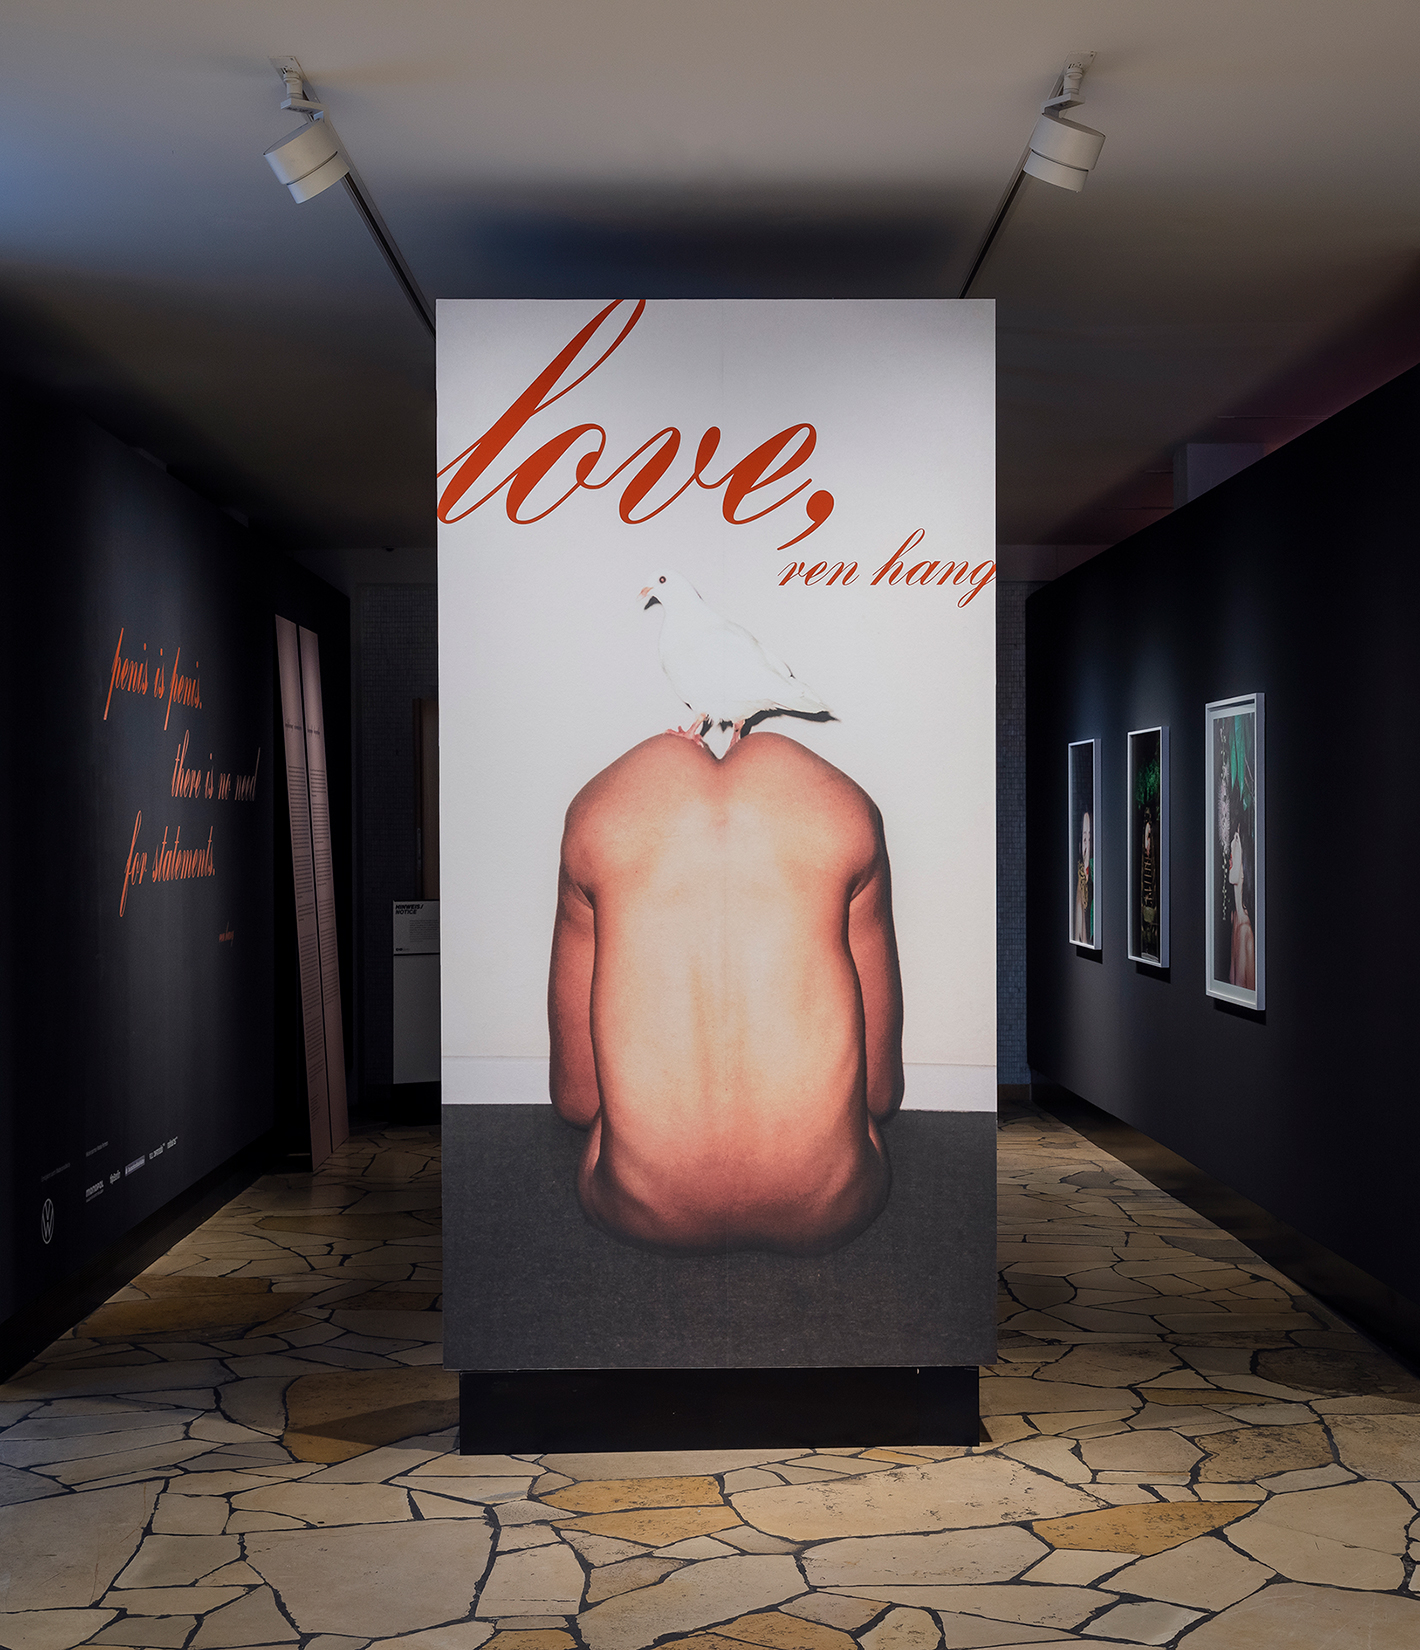 Ren Hang’s solo Exhibition “LOVE, REN HANG” at C/O Berlin